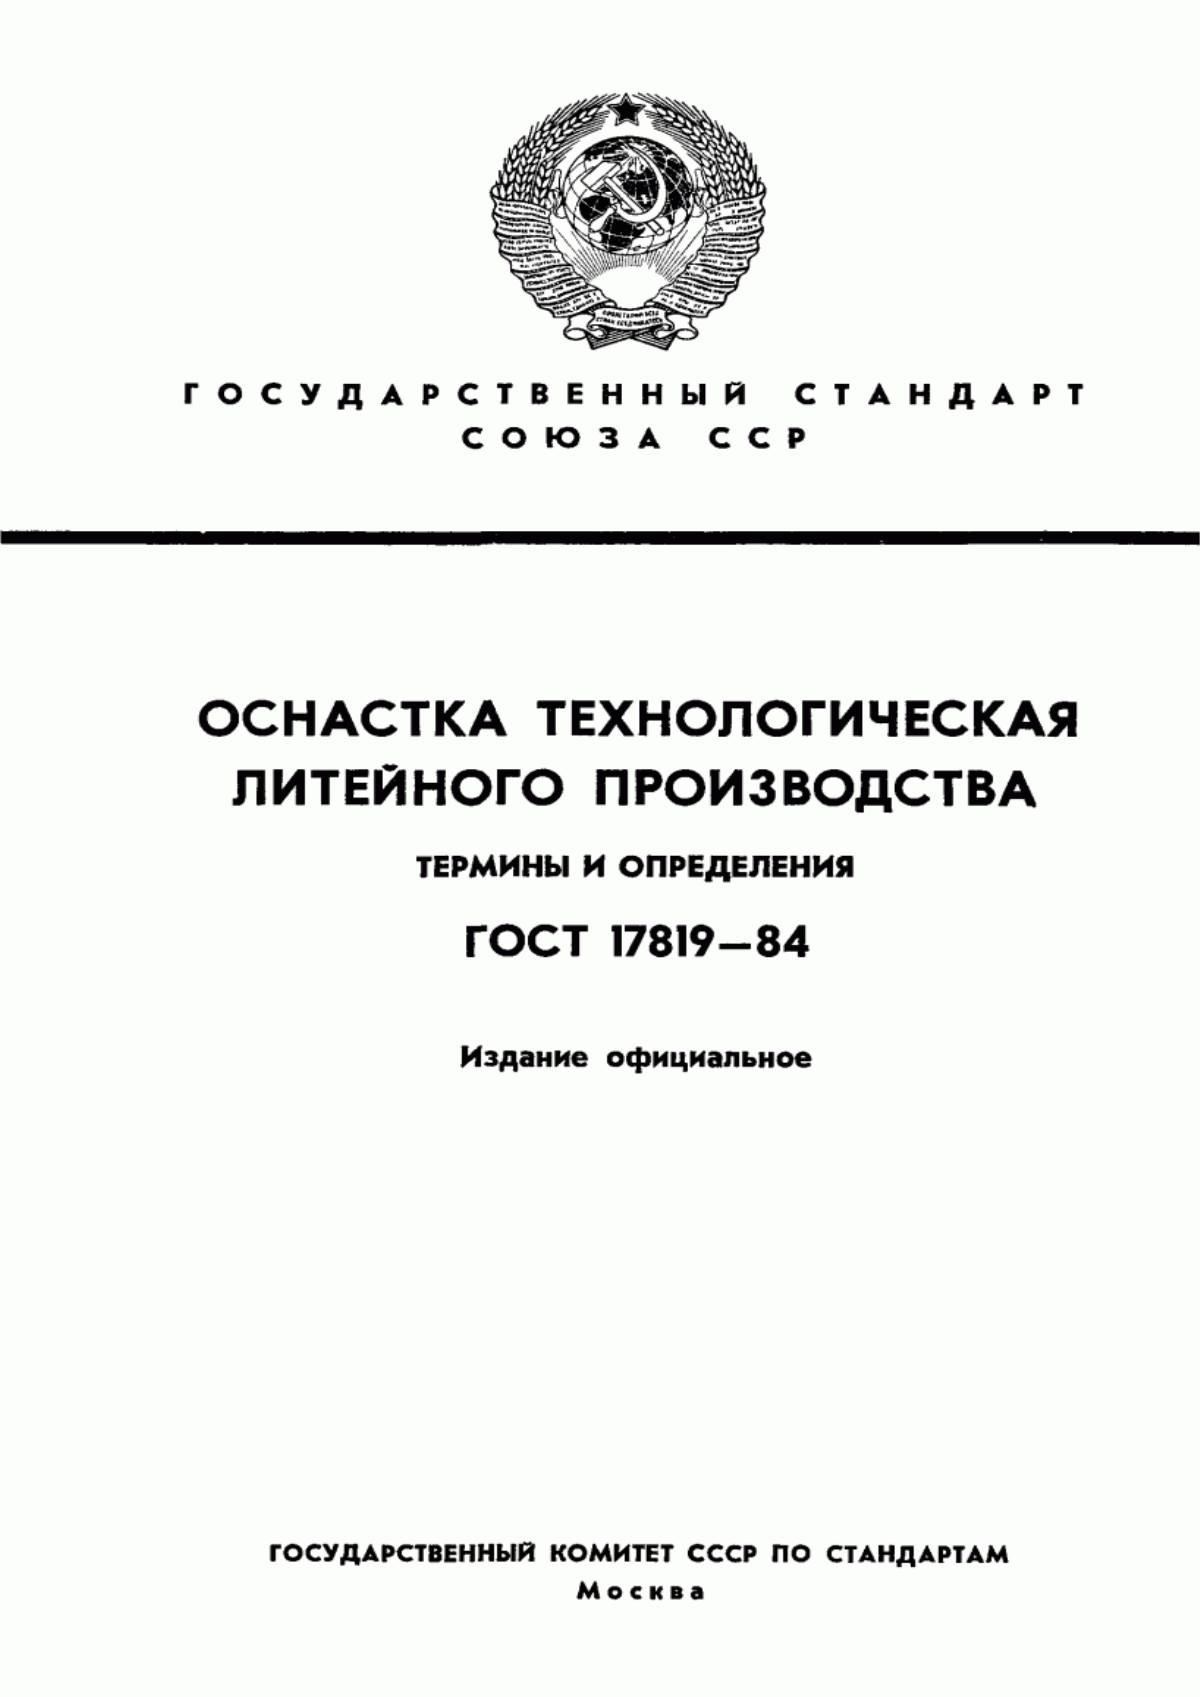 ГОСТ 17819-84 Оснастка технологическая литейного производства. Термины и определения